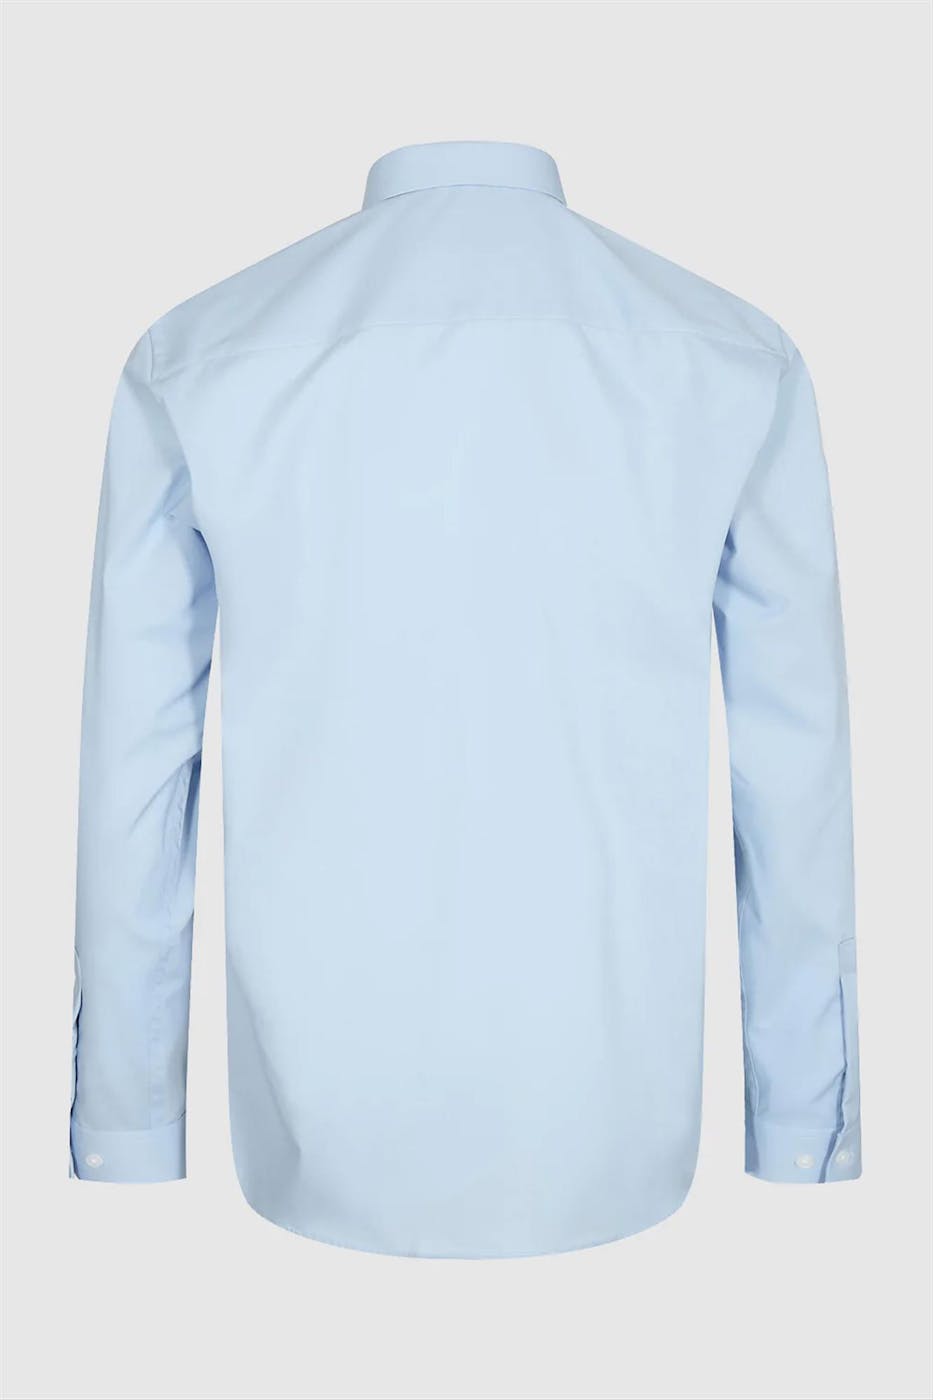 Minimum - Lichtblauw Halls hemd